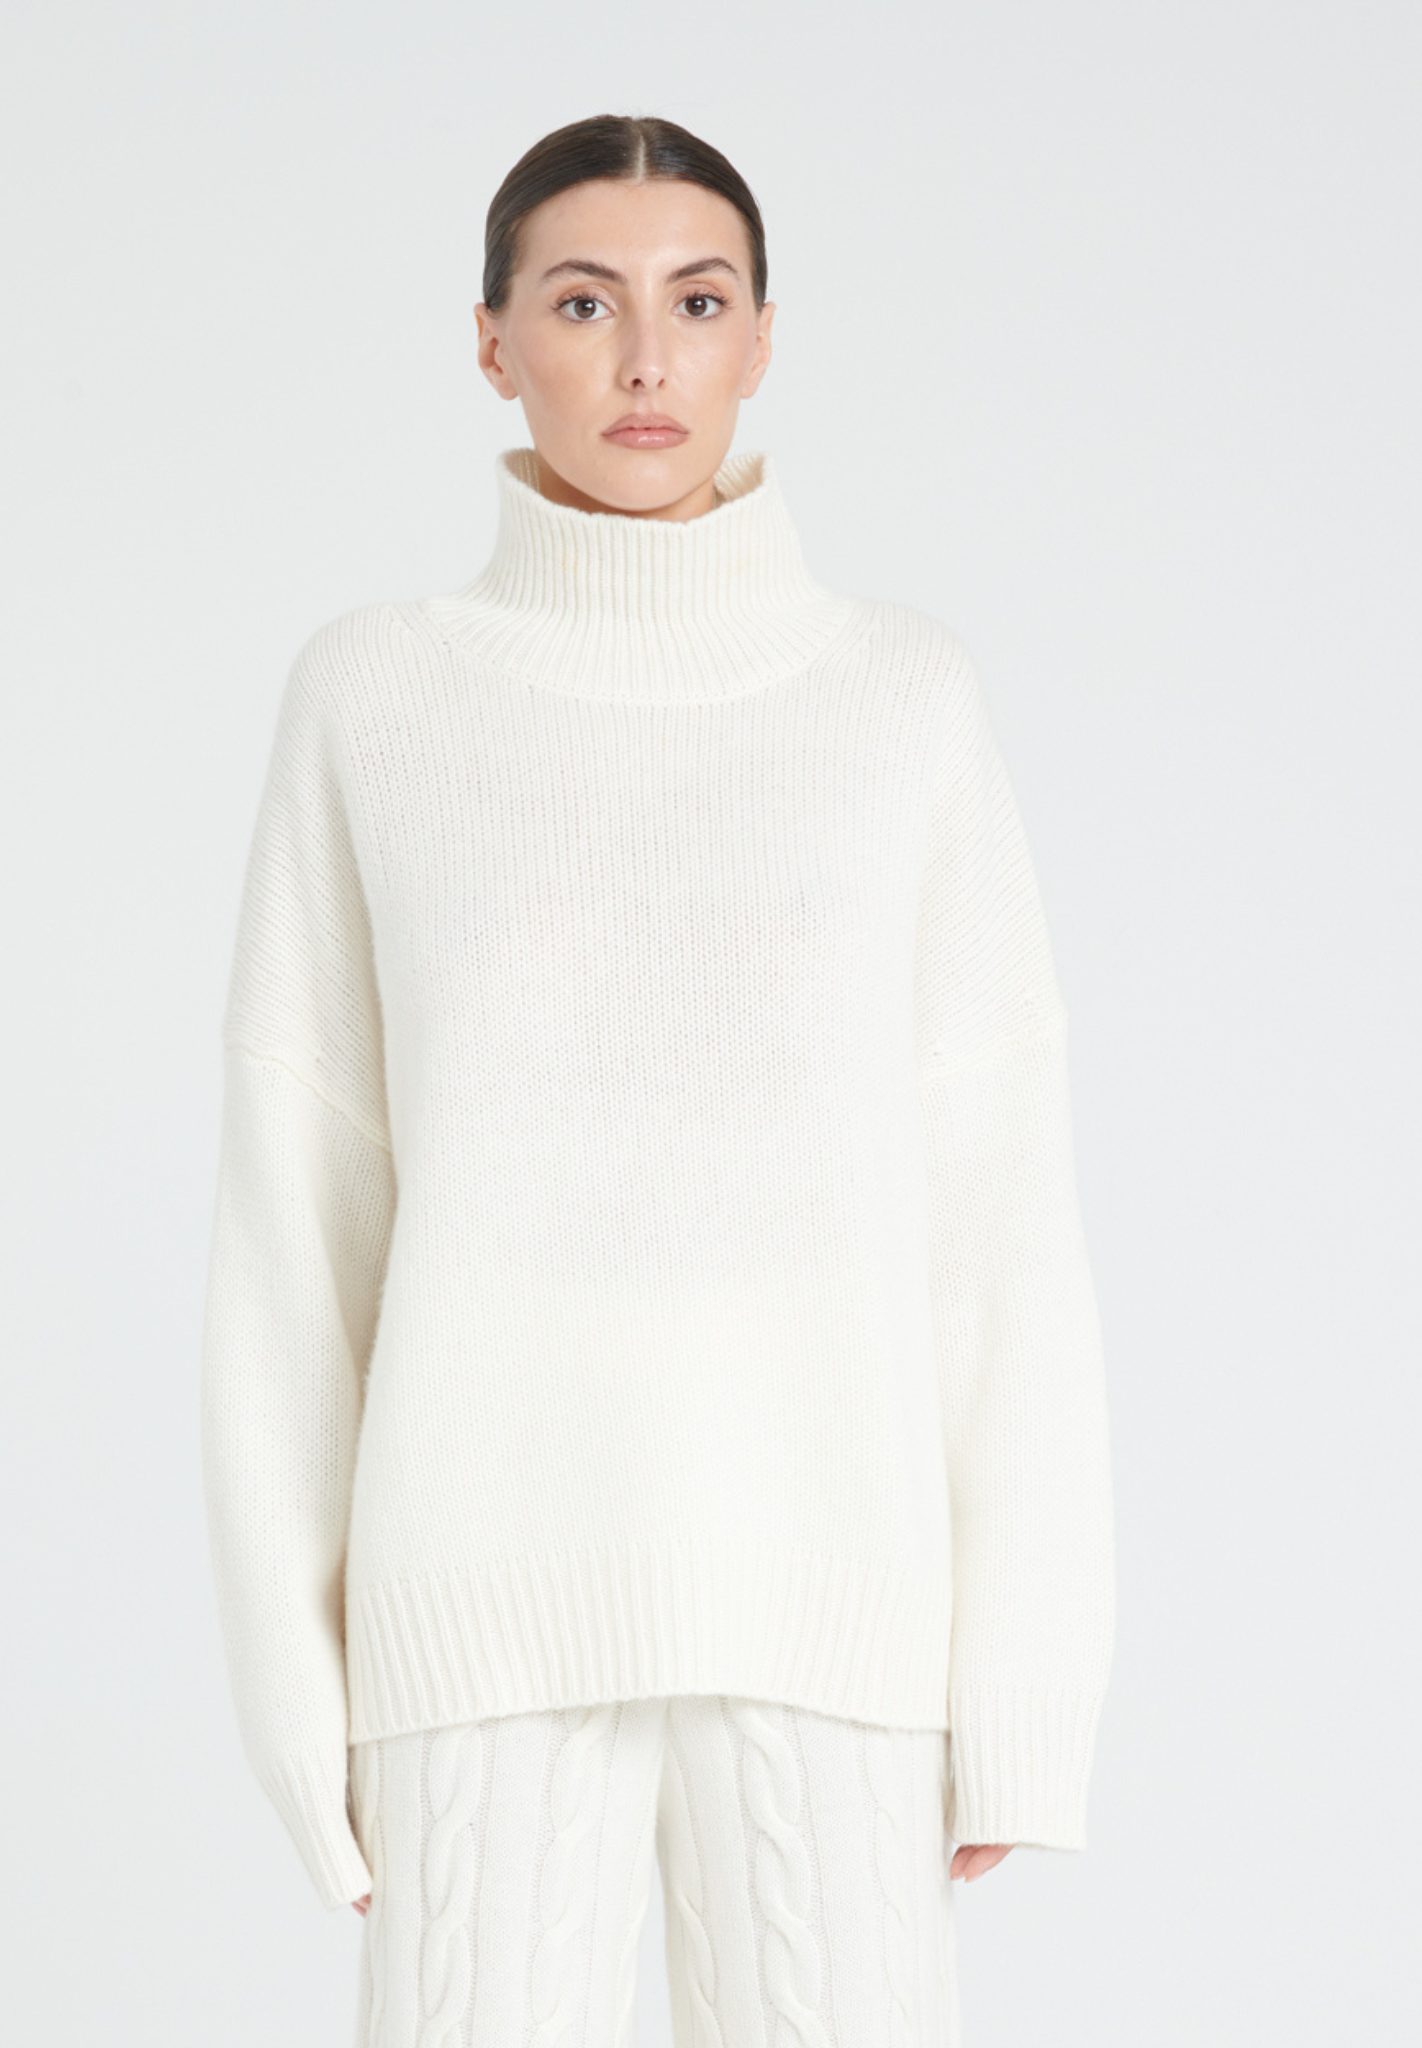 ZAYA 3 High neck sweater in 10 thread count cashmere, ecru white